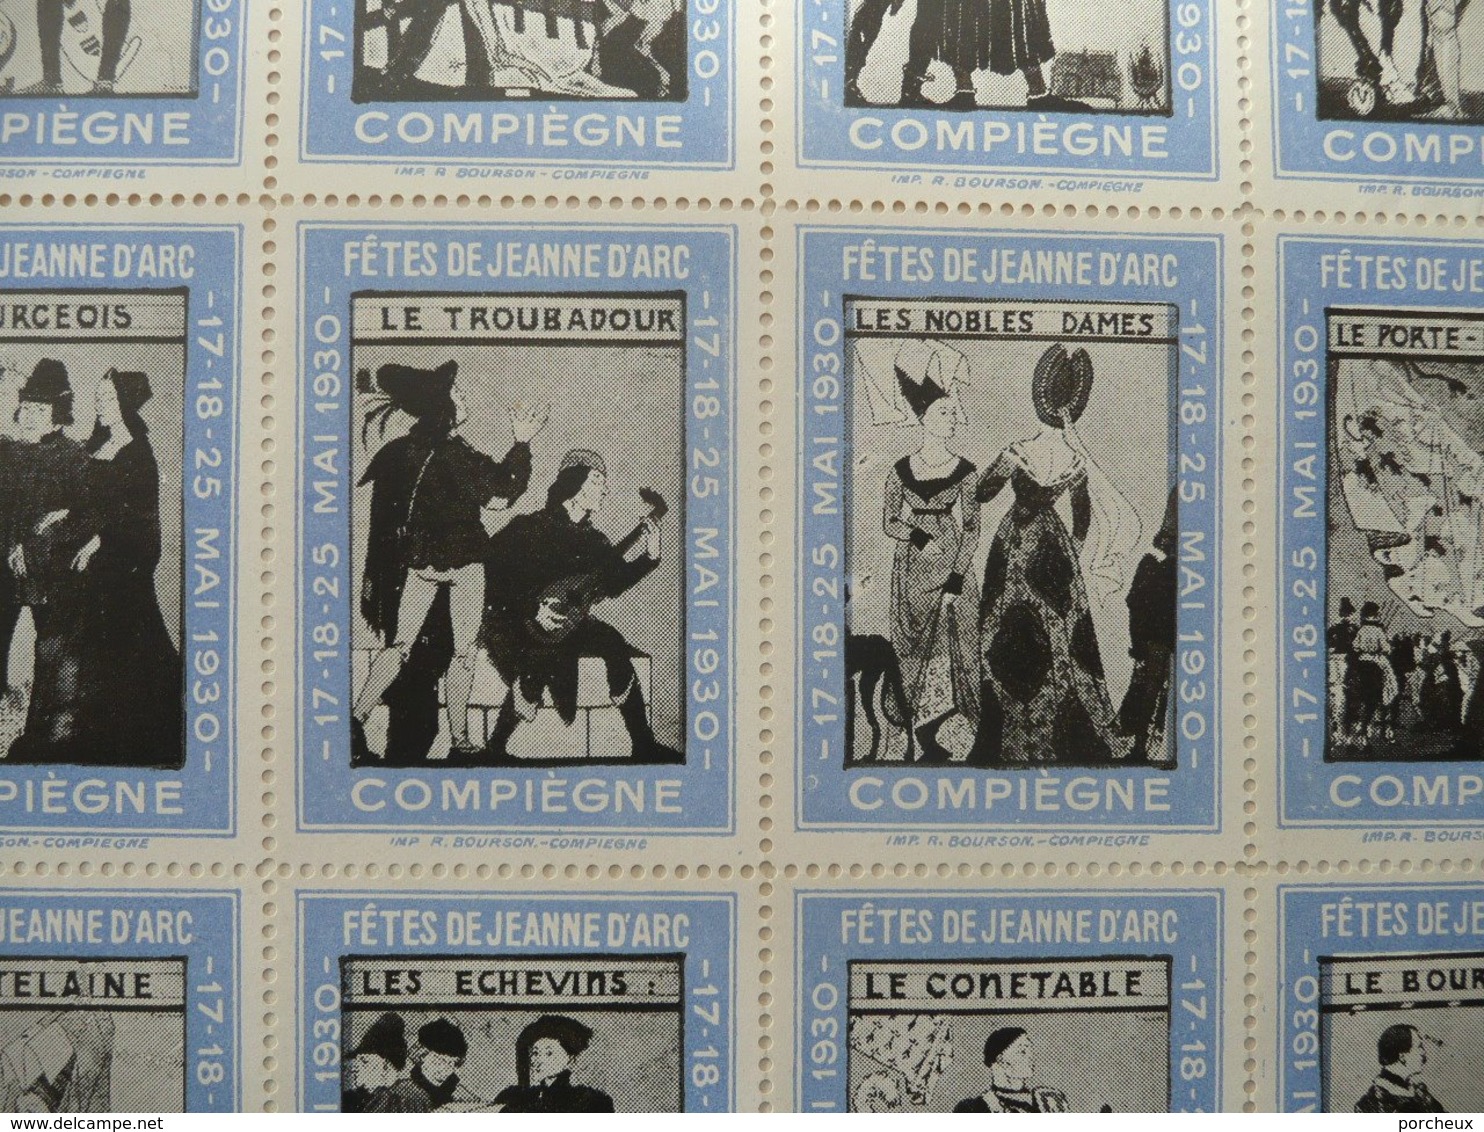 Rare Feuille Complète Vignettes Jeanne D'arc Compiegne 1930 . Feuille De 20 Vignettes . Les Dessins Sont De PINCHON - Vignetten (Erinnophilie)